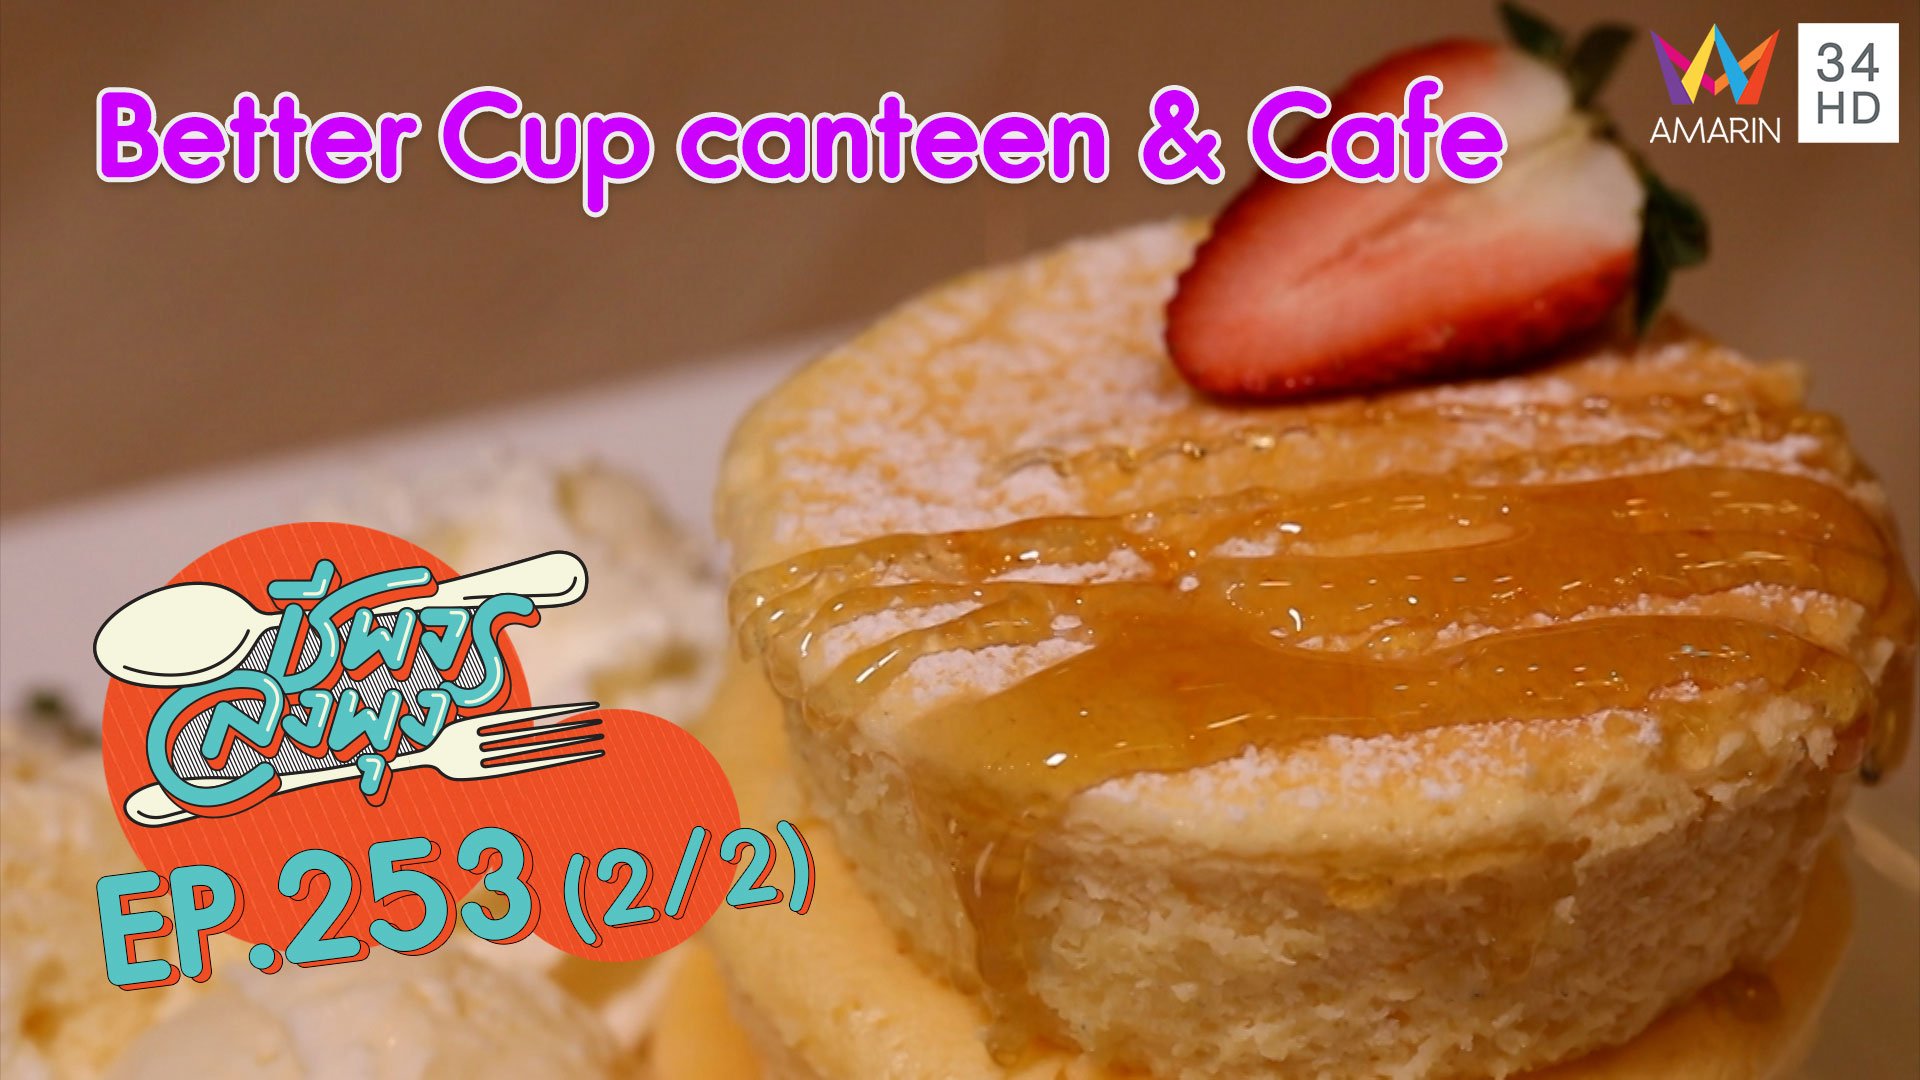 คาเฟ่สุดอบอุ่น @"ร้าน Better Cup canteen & Cafe" | ชีพจรลงพุง | 8 พ.ย. 63 (2/2) | AMARIN TVHD34